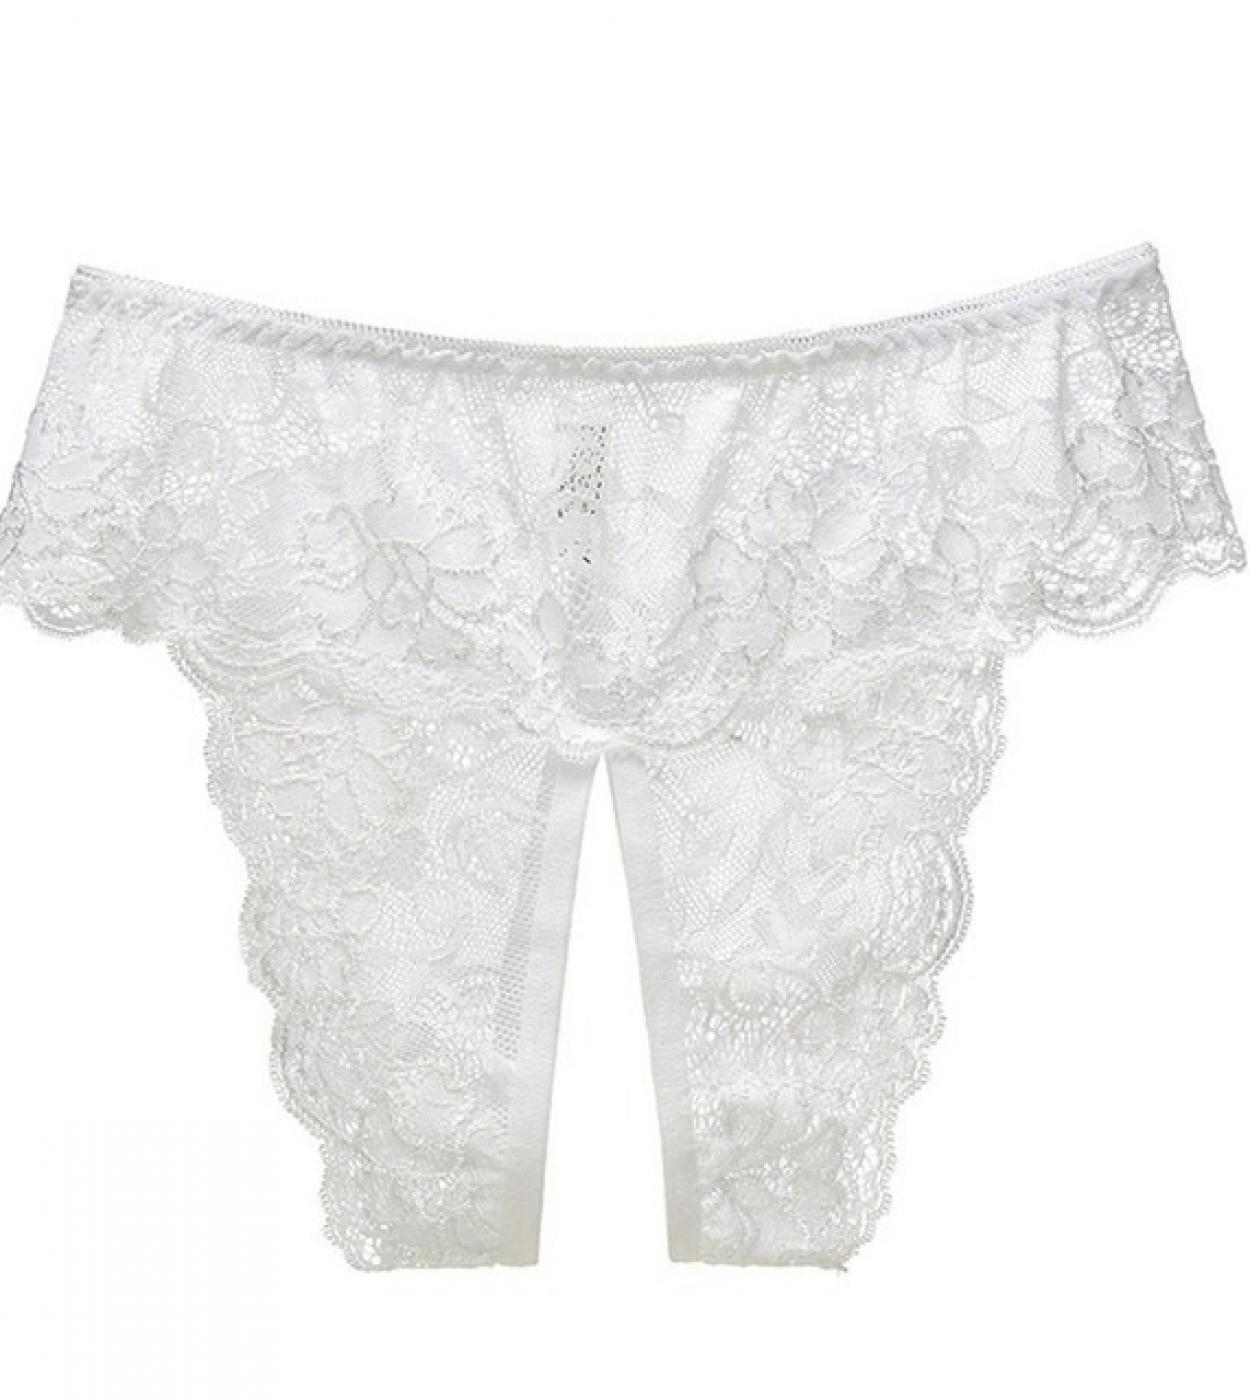 A7Jrbda Plus Size Crotchless Transparent Panties Women' s Thong Open Crotch  M 6XL Lace Underwear (Color : Ivory, Size : 5XL)